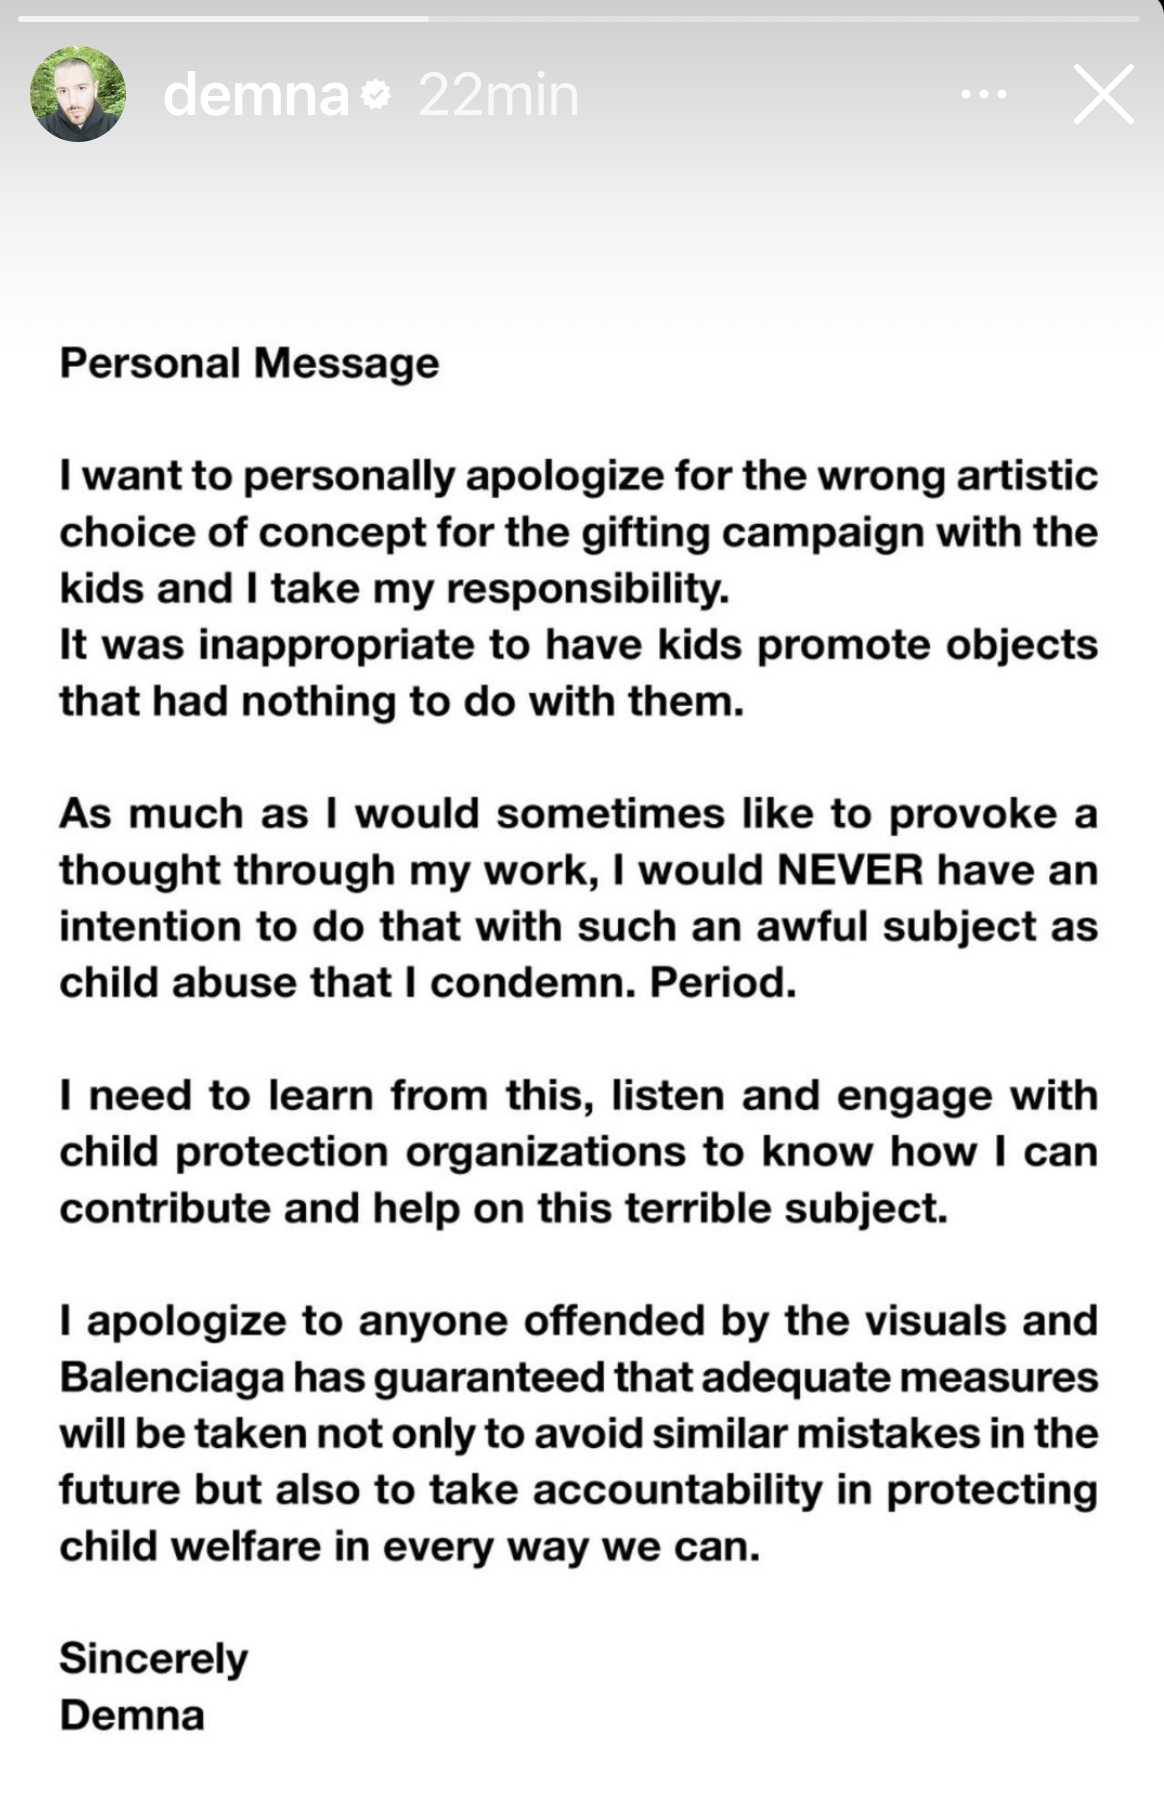 le 2 décembre 2022, Demna Gvasalia, actuel directeur artistique de Balenciaga, a présenté personnellement ses excuses sur son compte Instagram